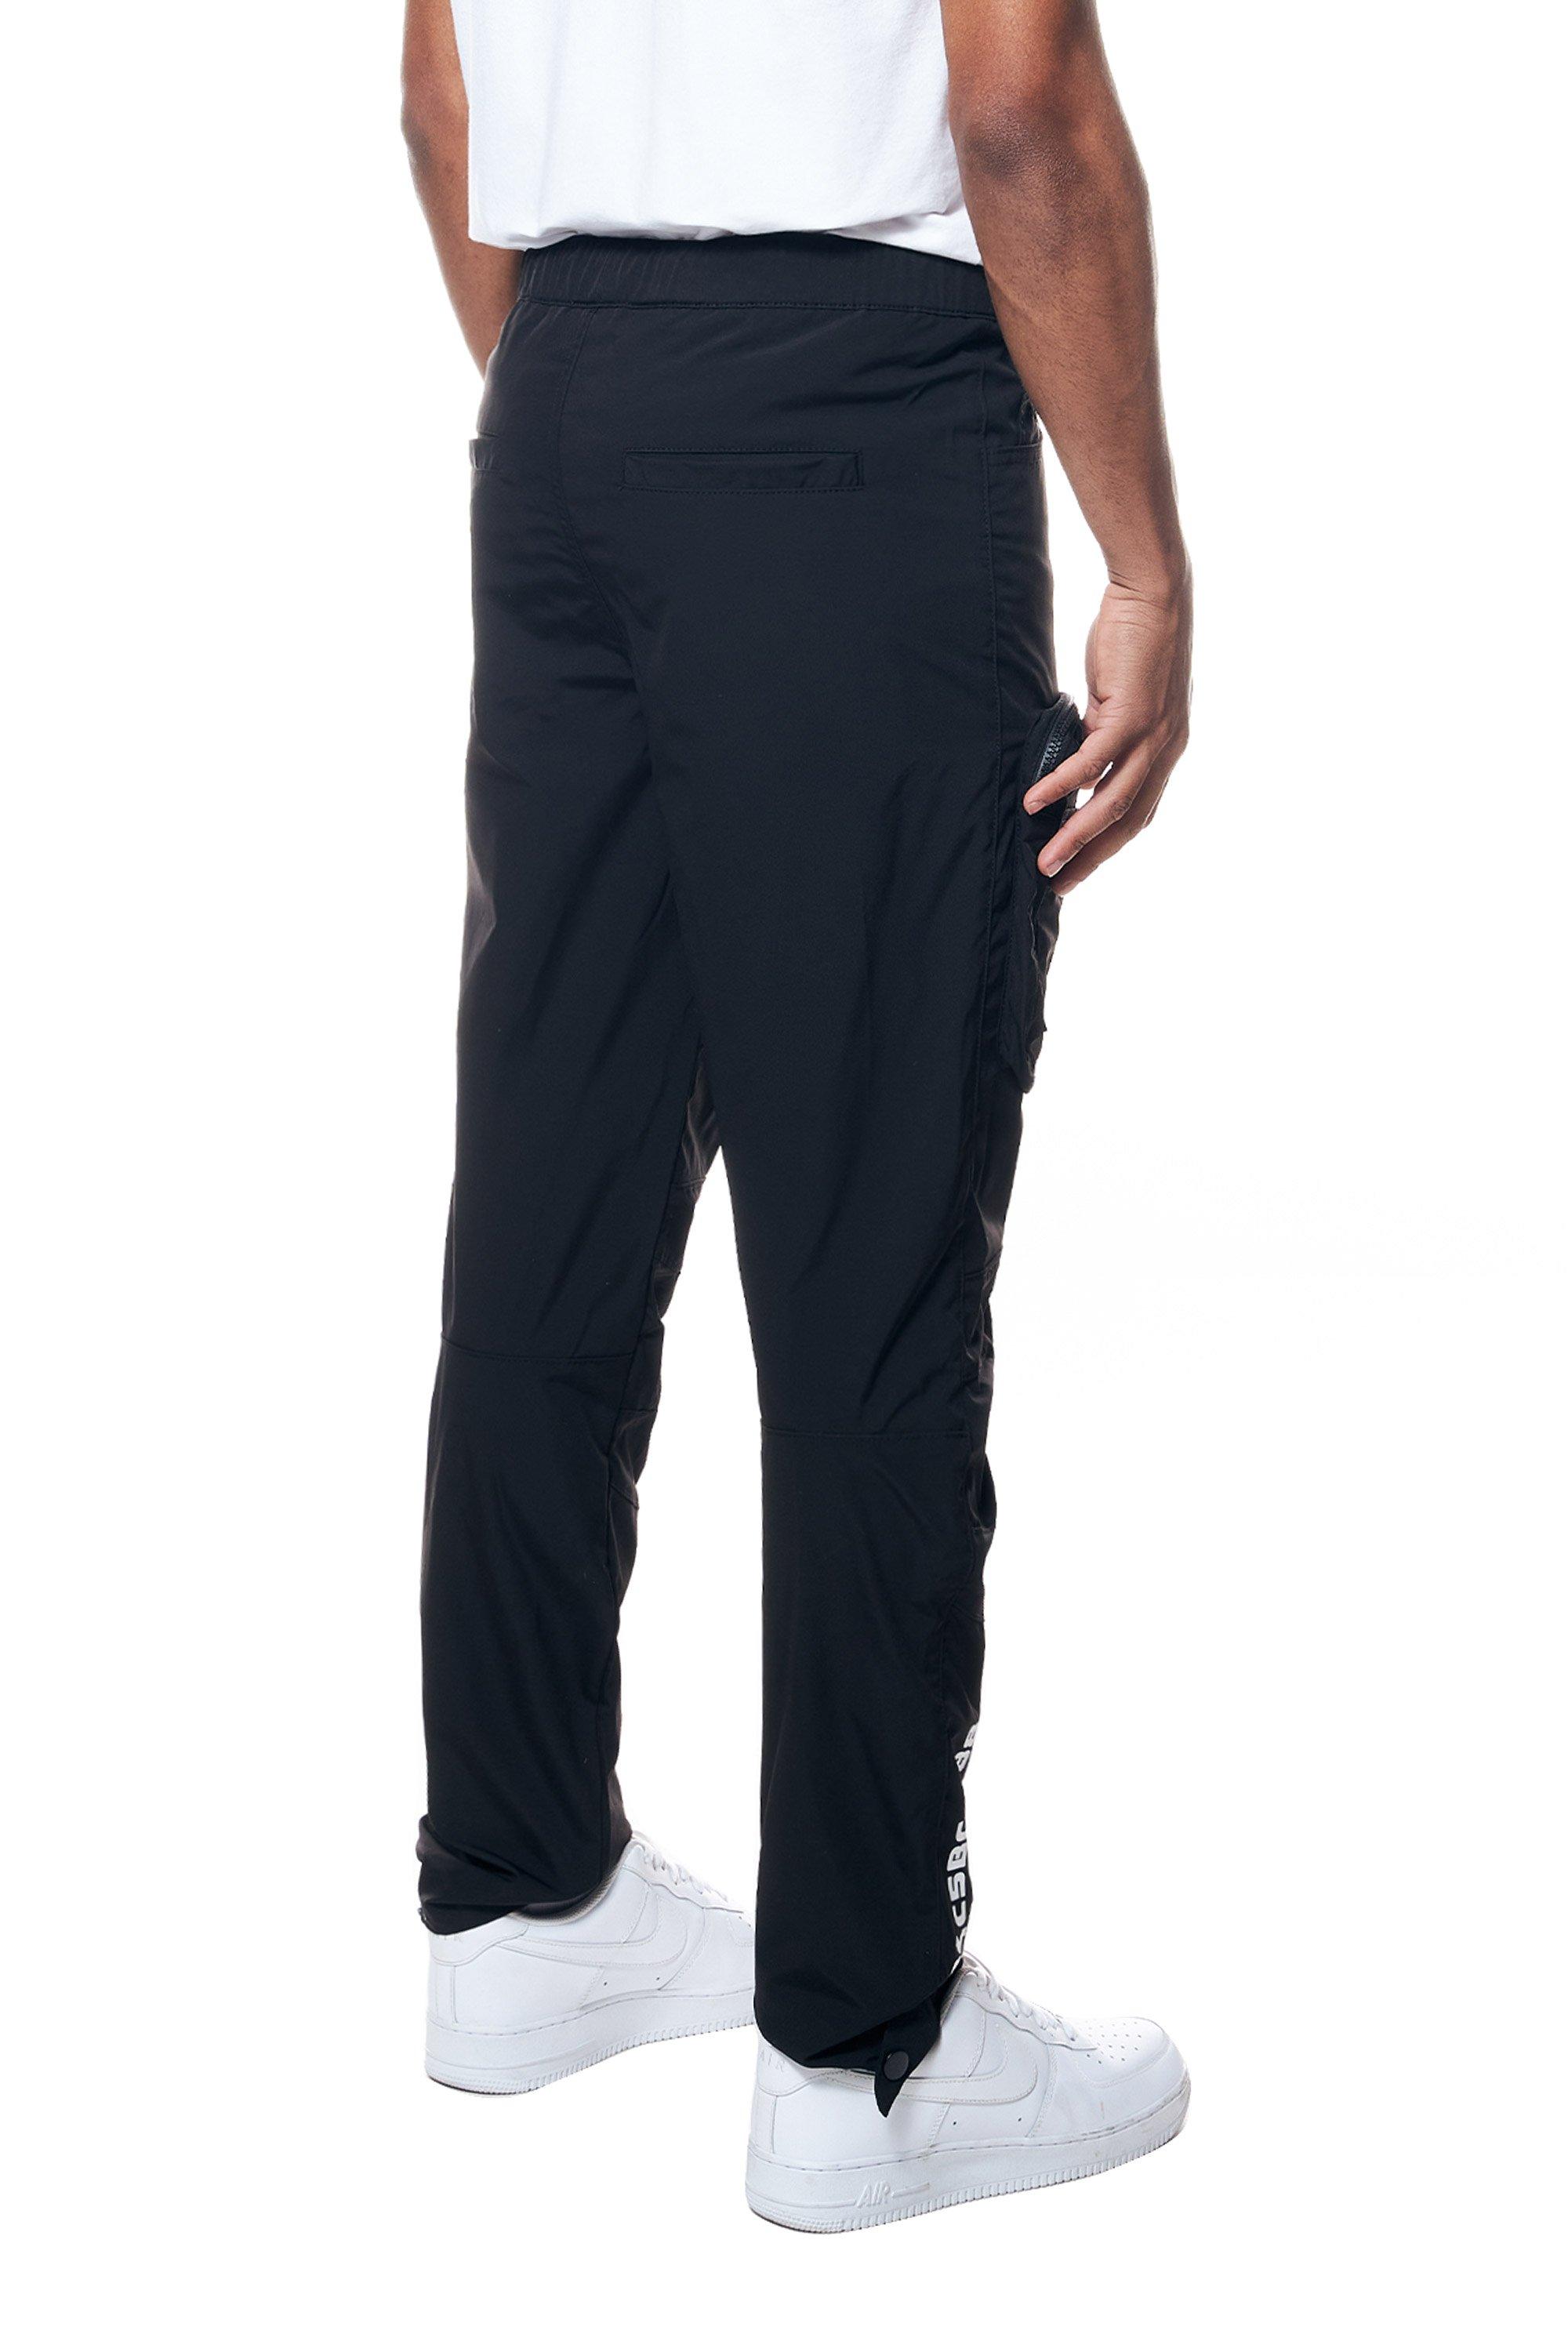 Smoke Rise Men's Printed Nylon Utility Pants - Black